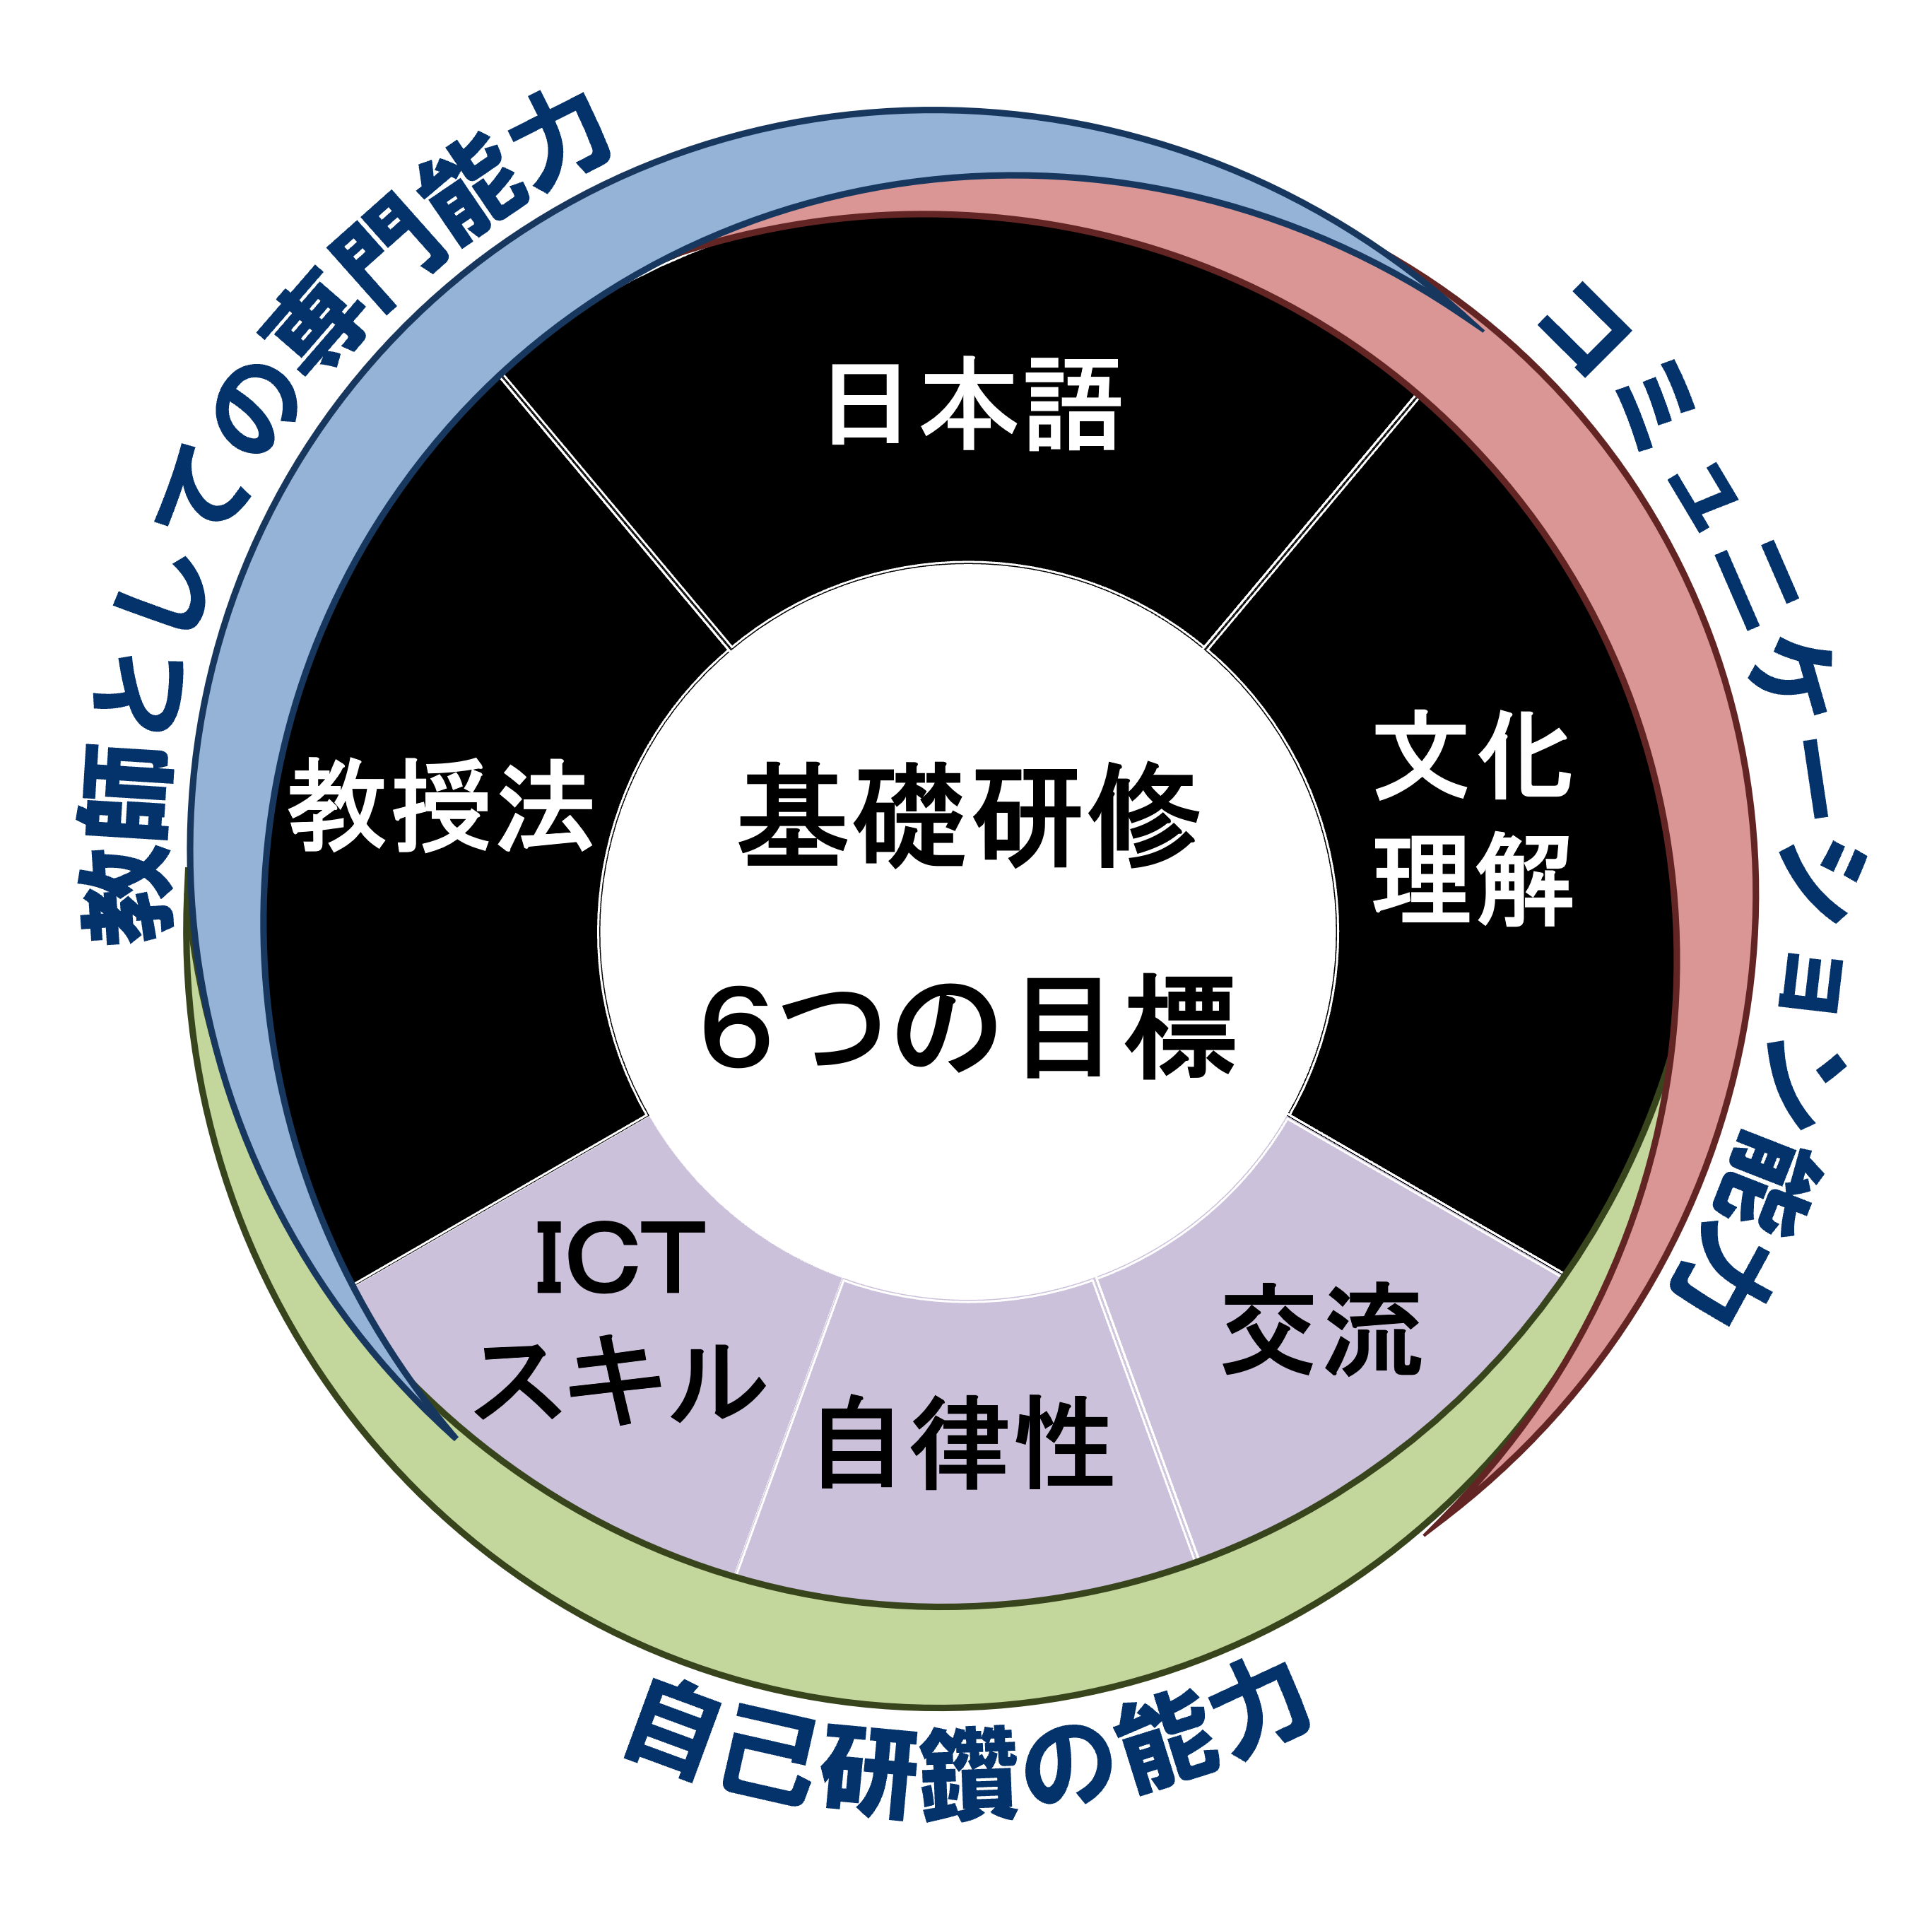 基礎研修6つの目標（教授法、日本語、文化理解、交流、自律性、ICTスキル）と3つの能力（教師としての専門能力、コミュニケーション能力、自己研鑽の能力）を円で図示した画像